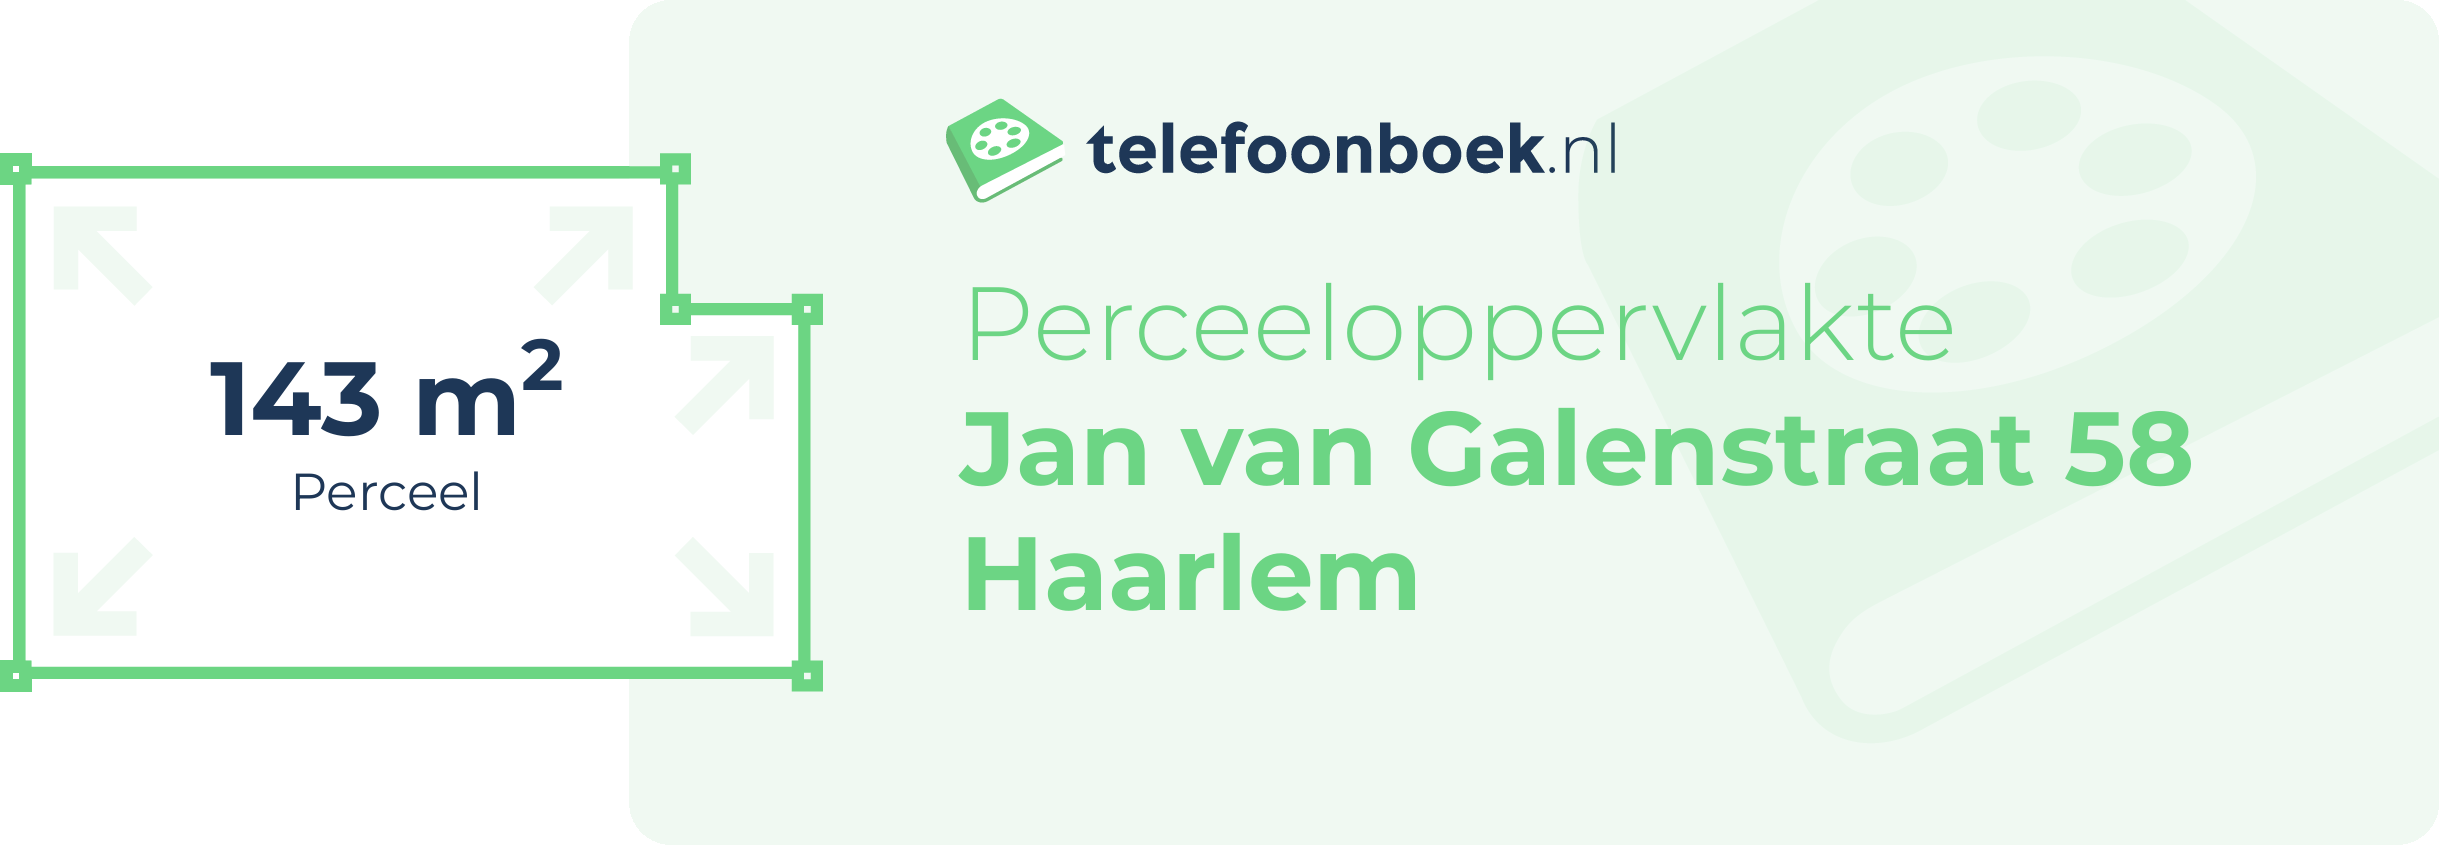 Perceeloppervlakte Jan Van Galenstraat 58 Haarlem